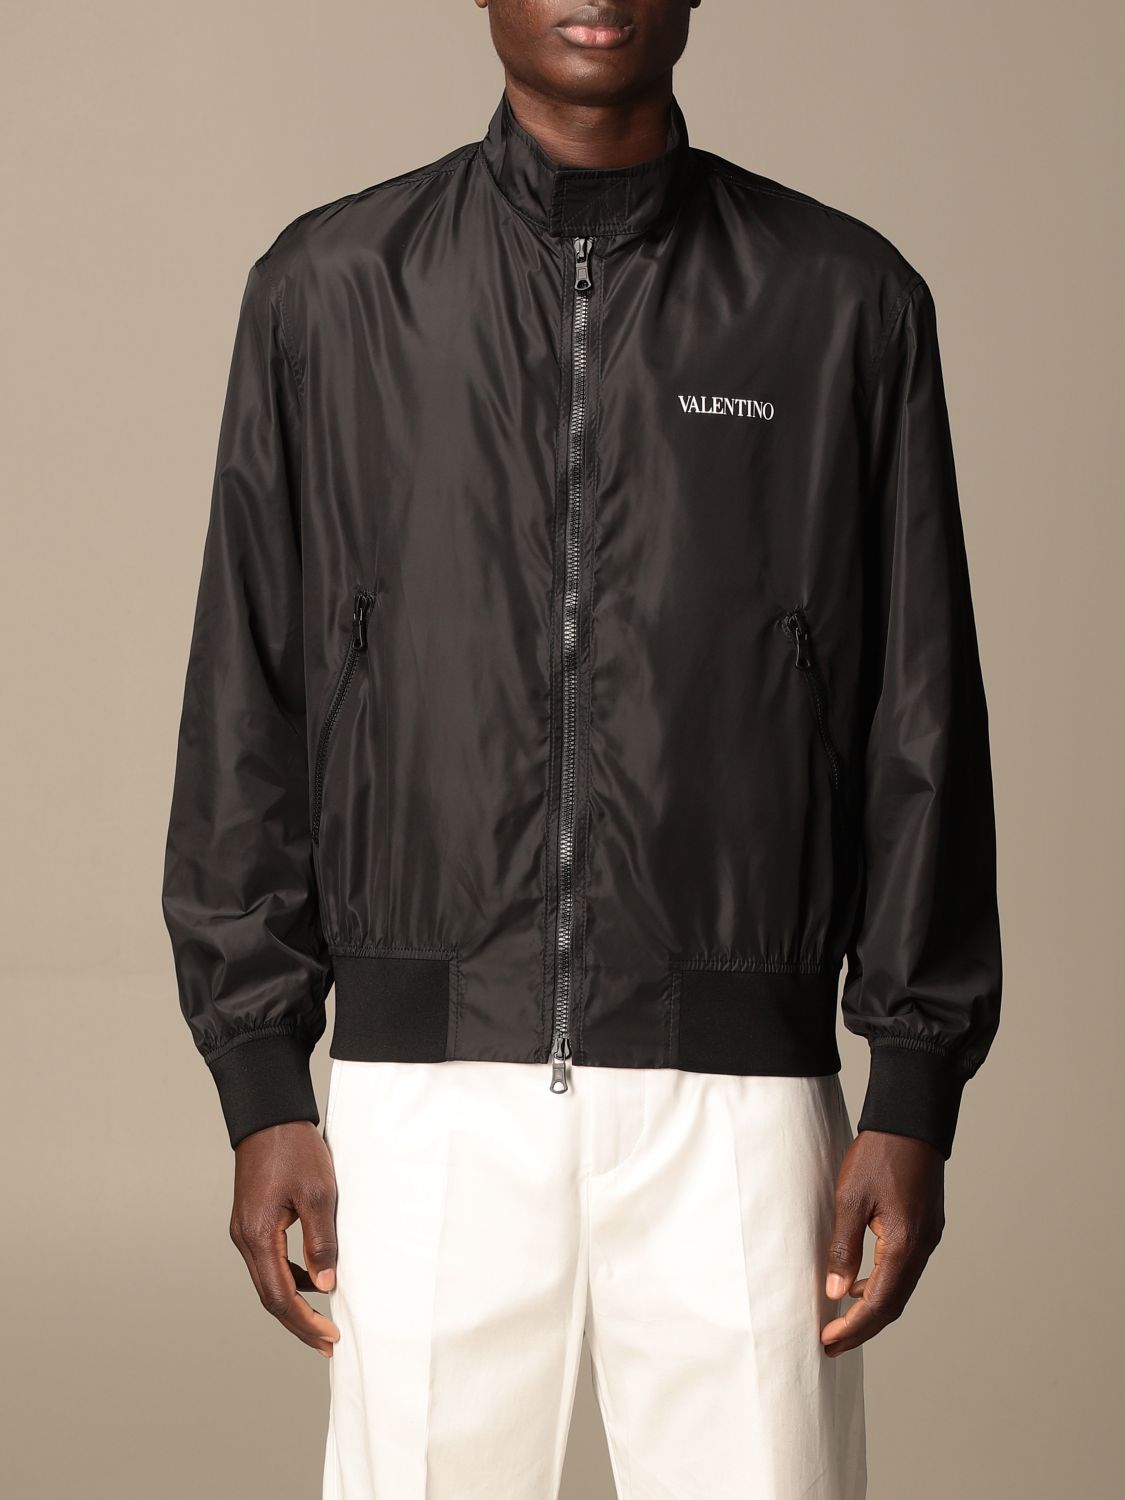 Valentino nylon bomber jacket with logo